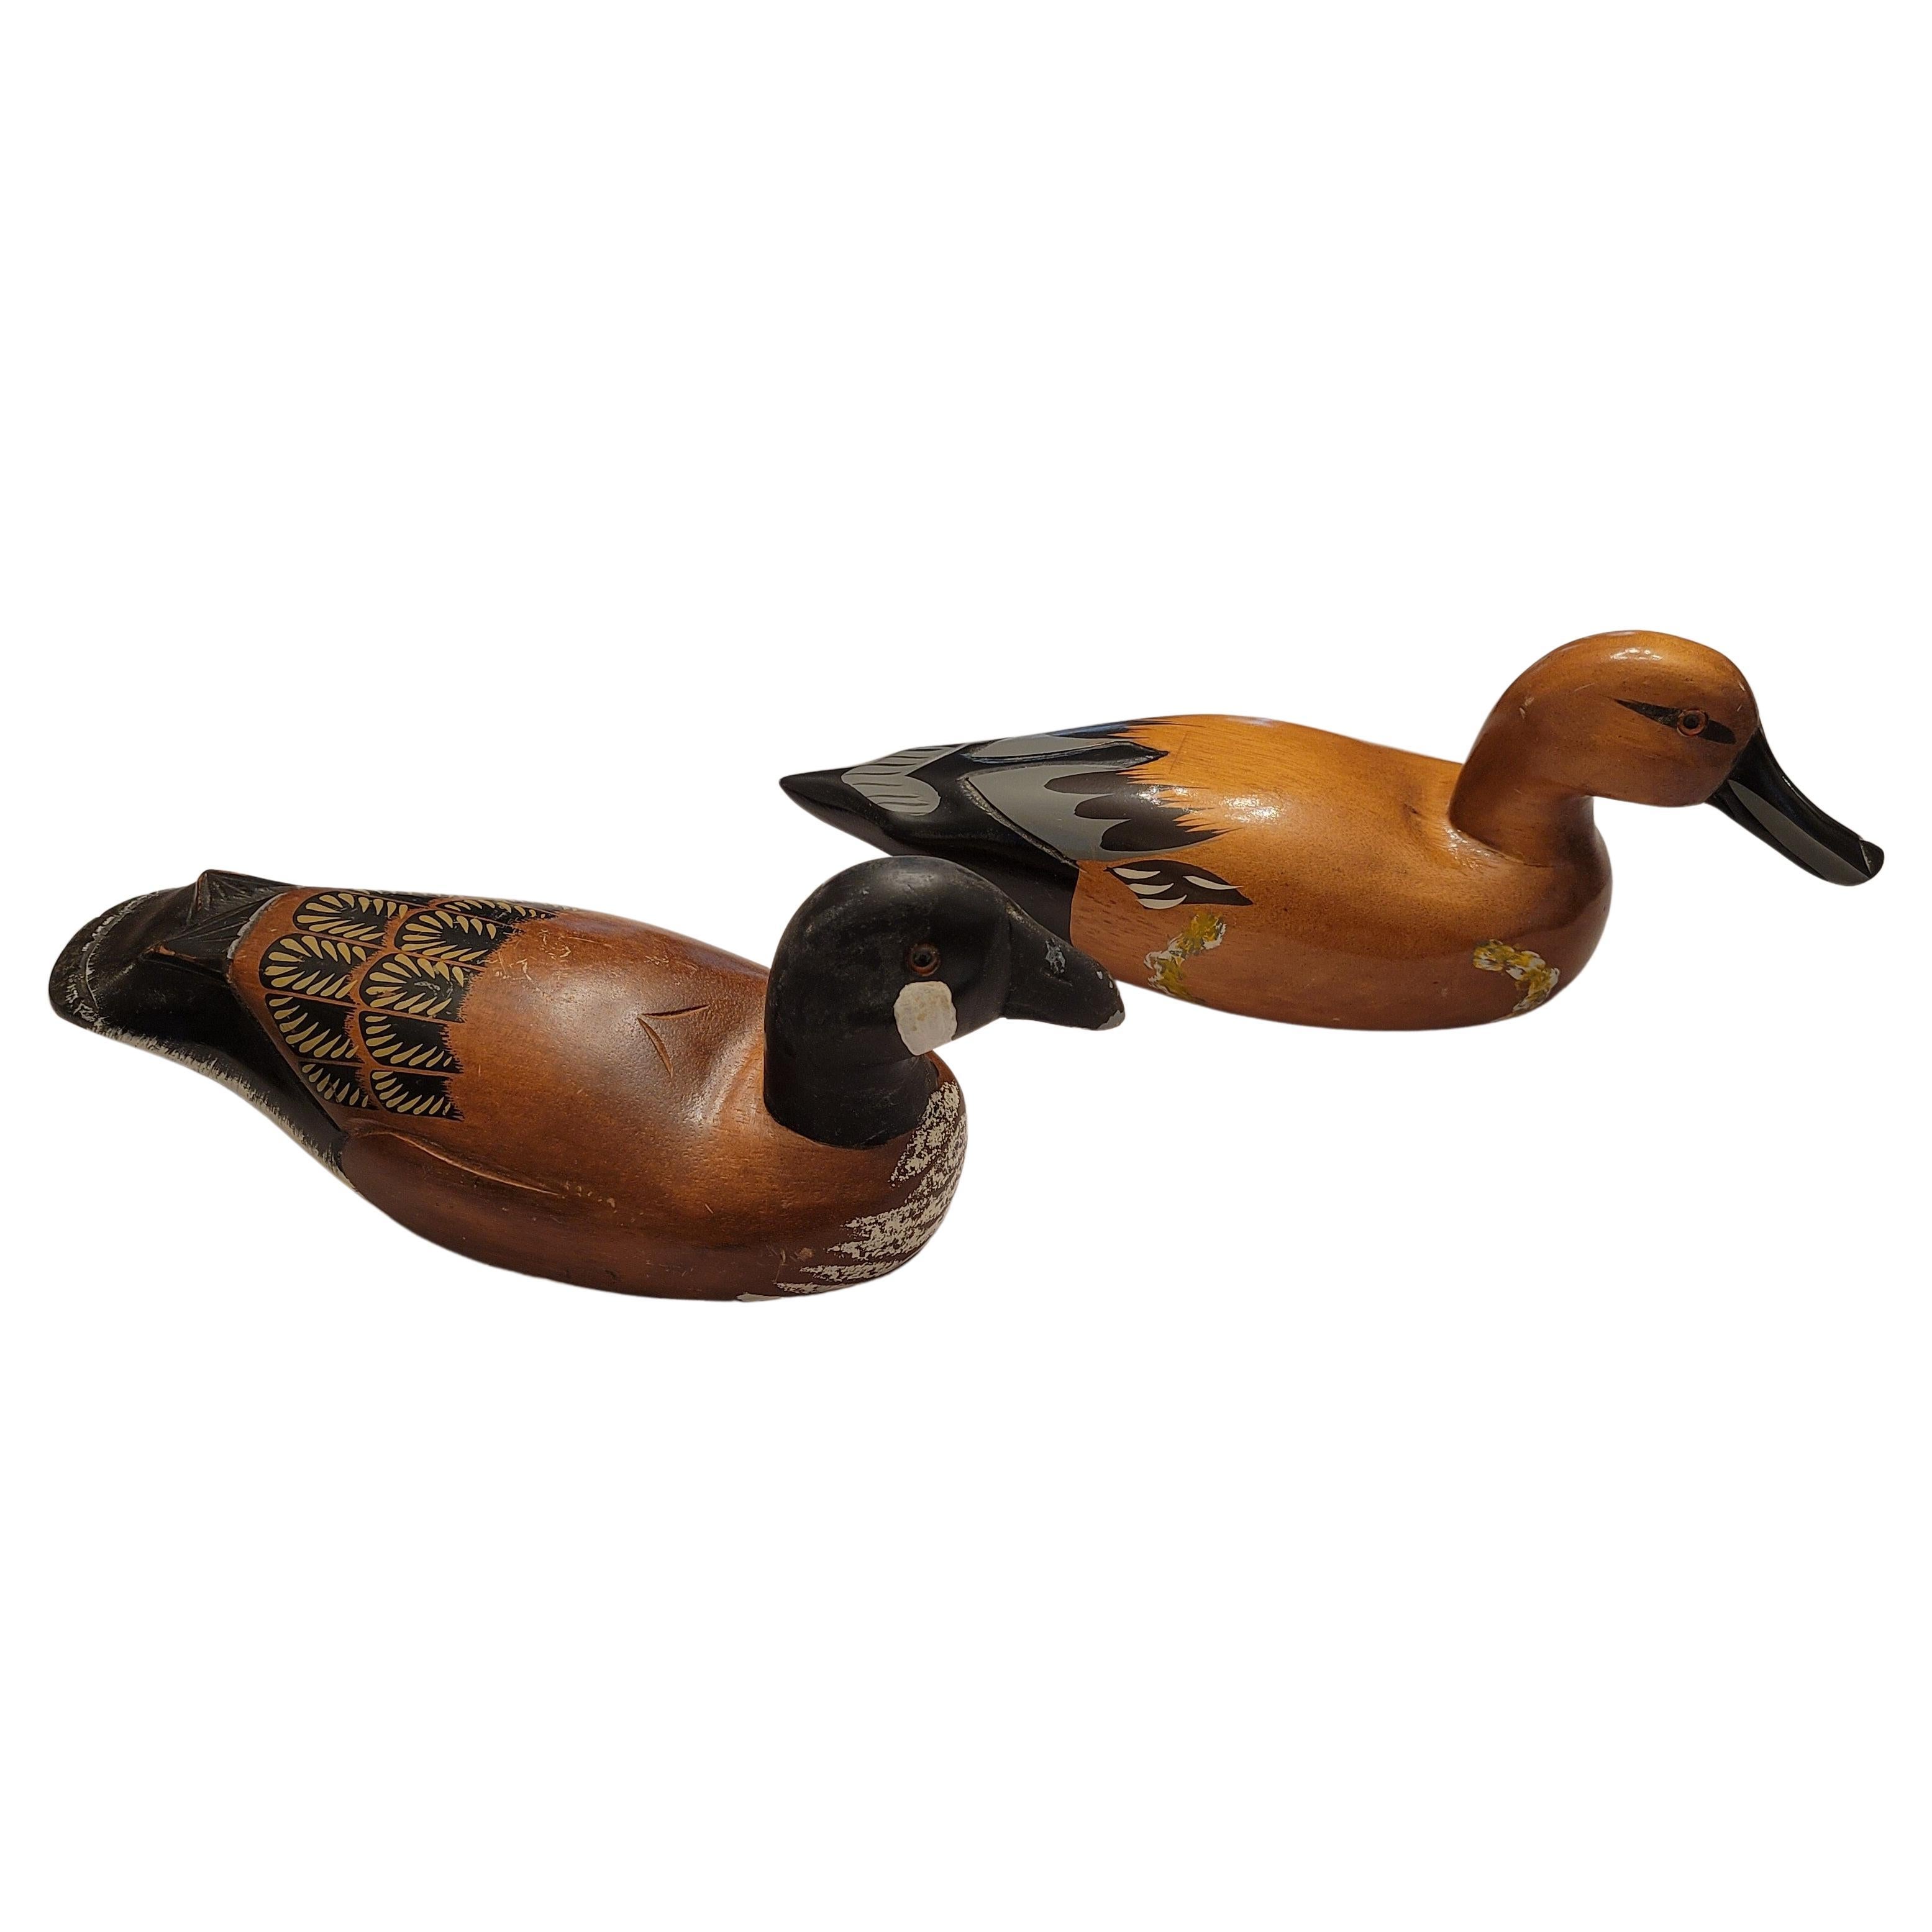 vintage duck decoys for sale